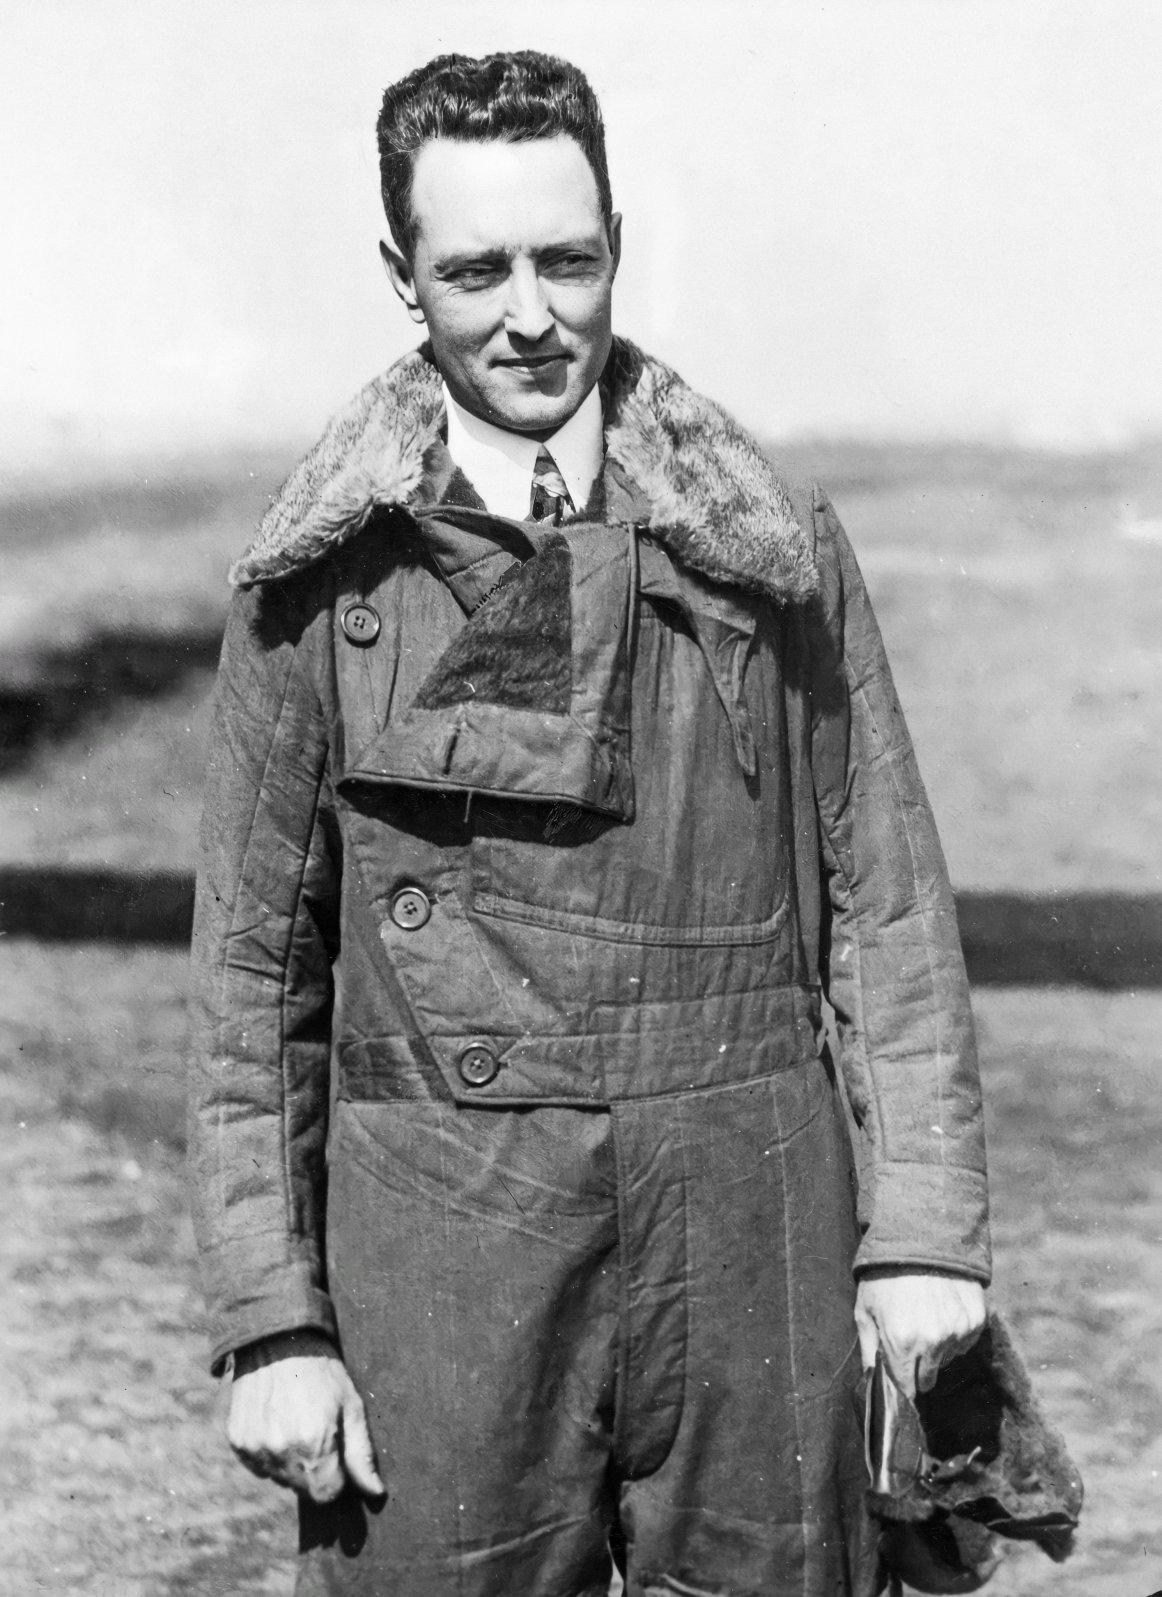 रिचर्ड एवलिन बर्ड जूनियर, फ़्लाइट जैकेट में, 1920s